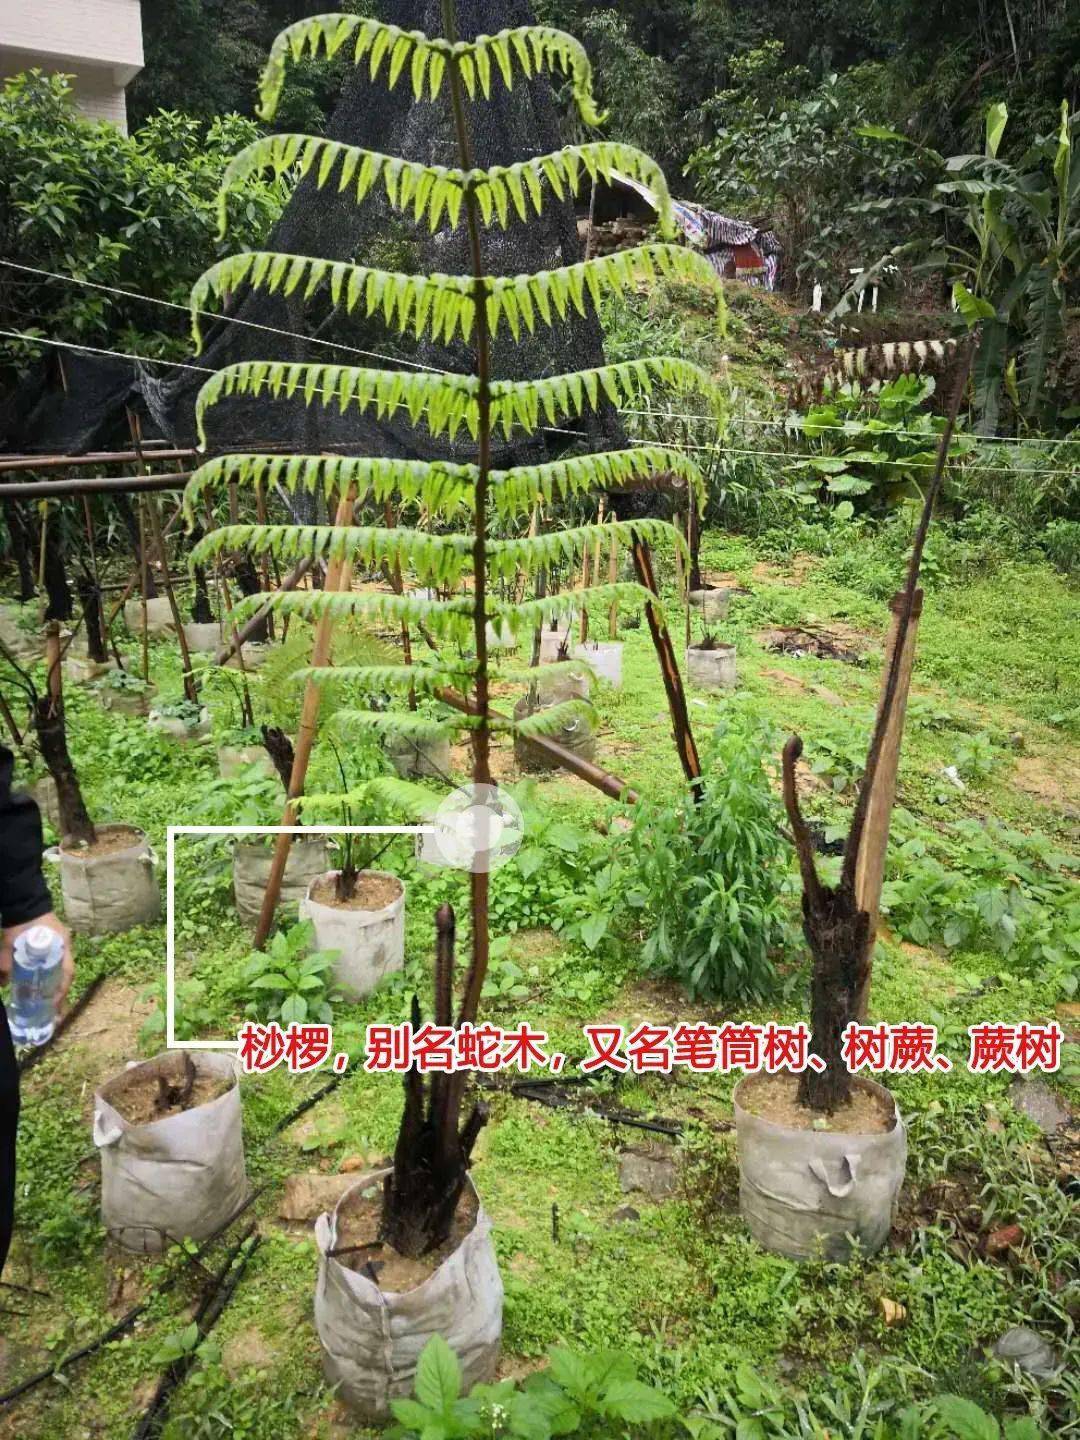 2018年至2019年9月间,江某桂非法将124棵野生桫椤树从野外挖掘回自己